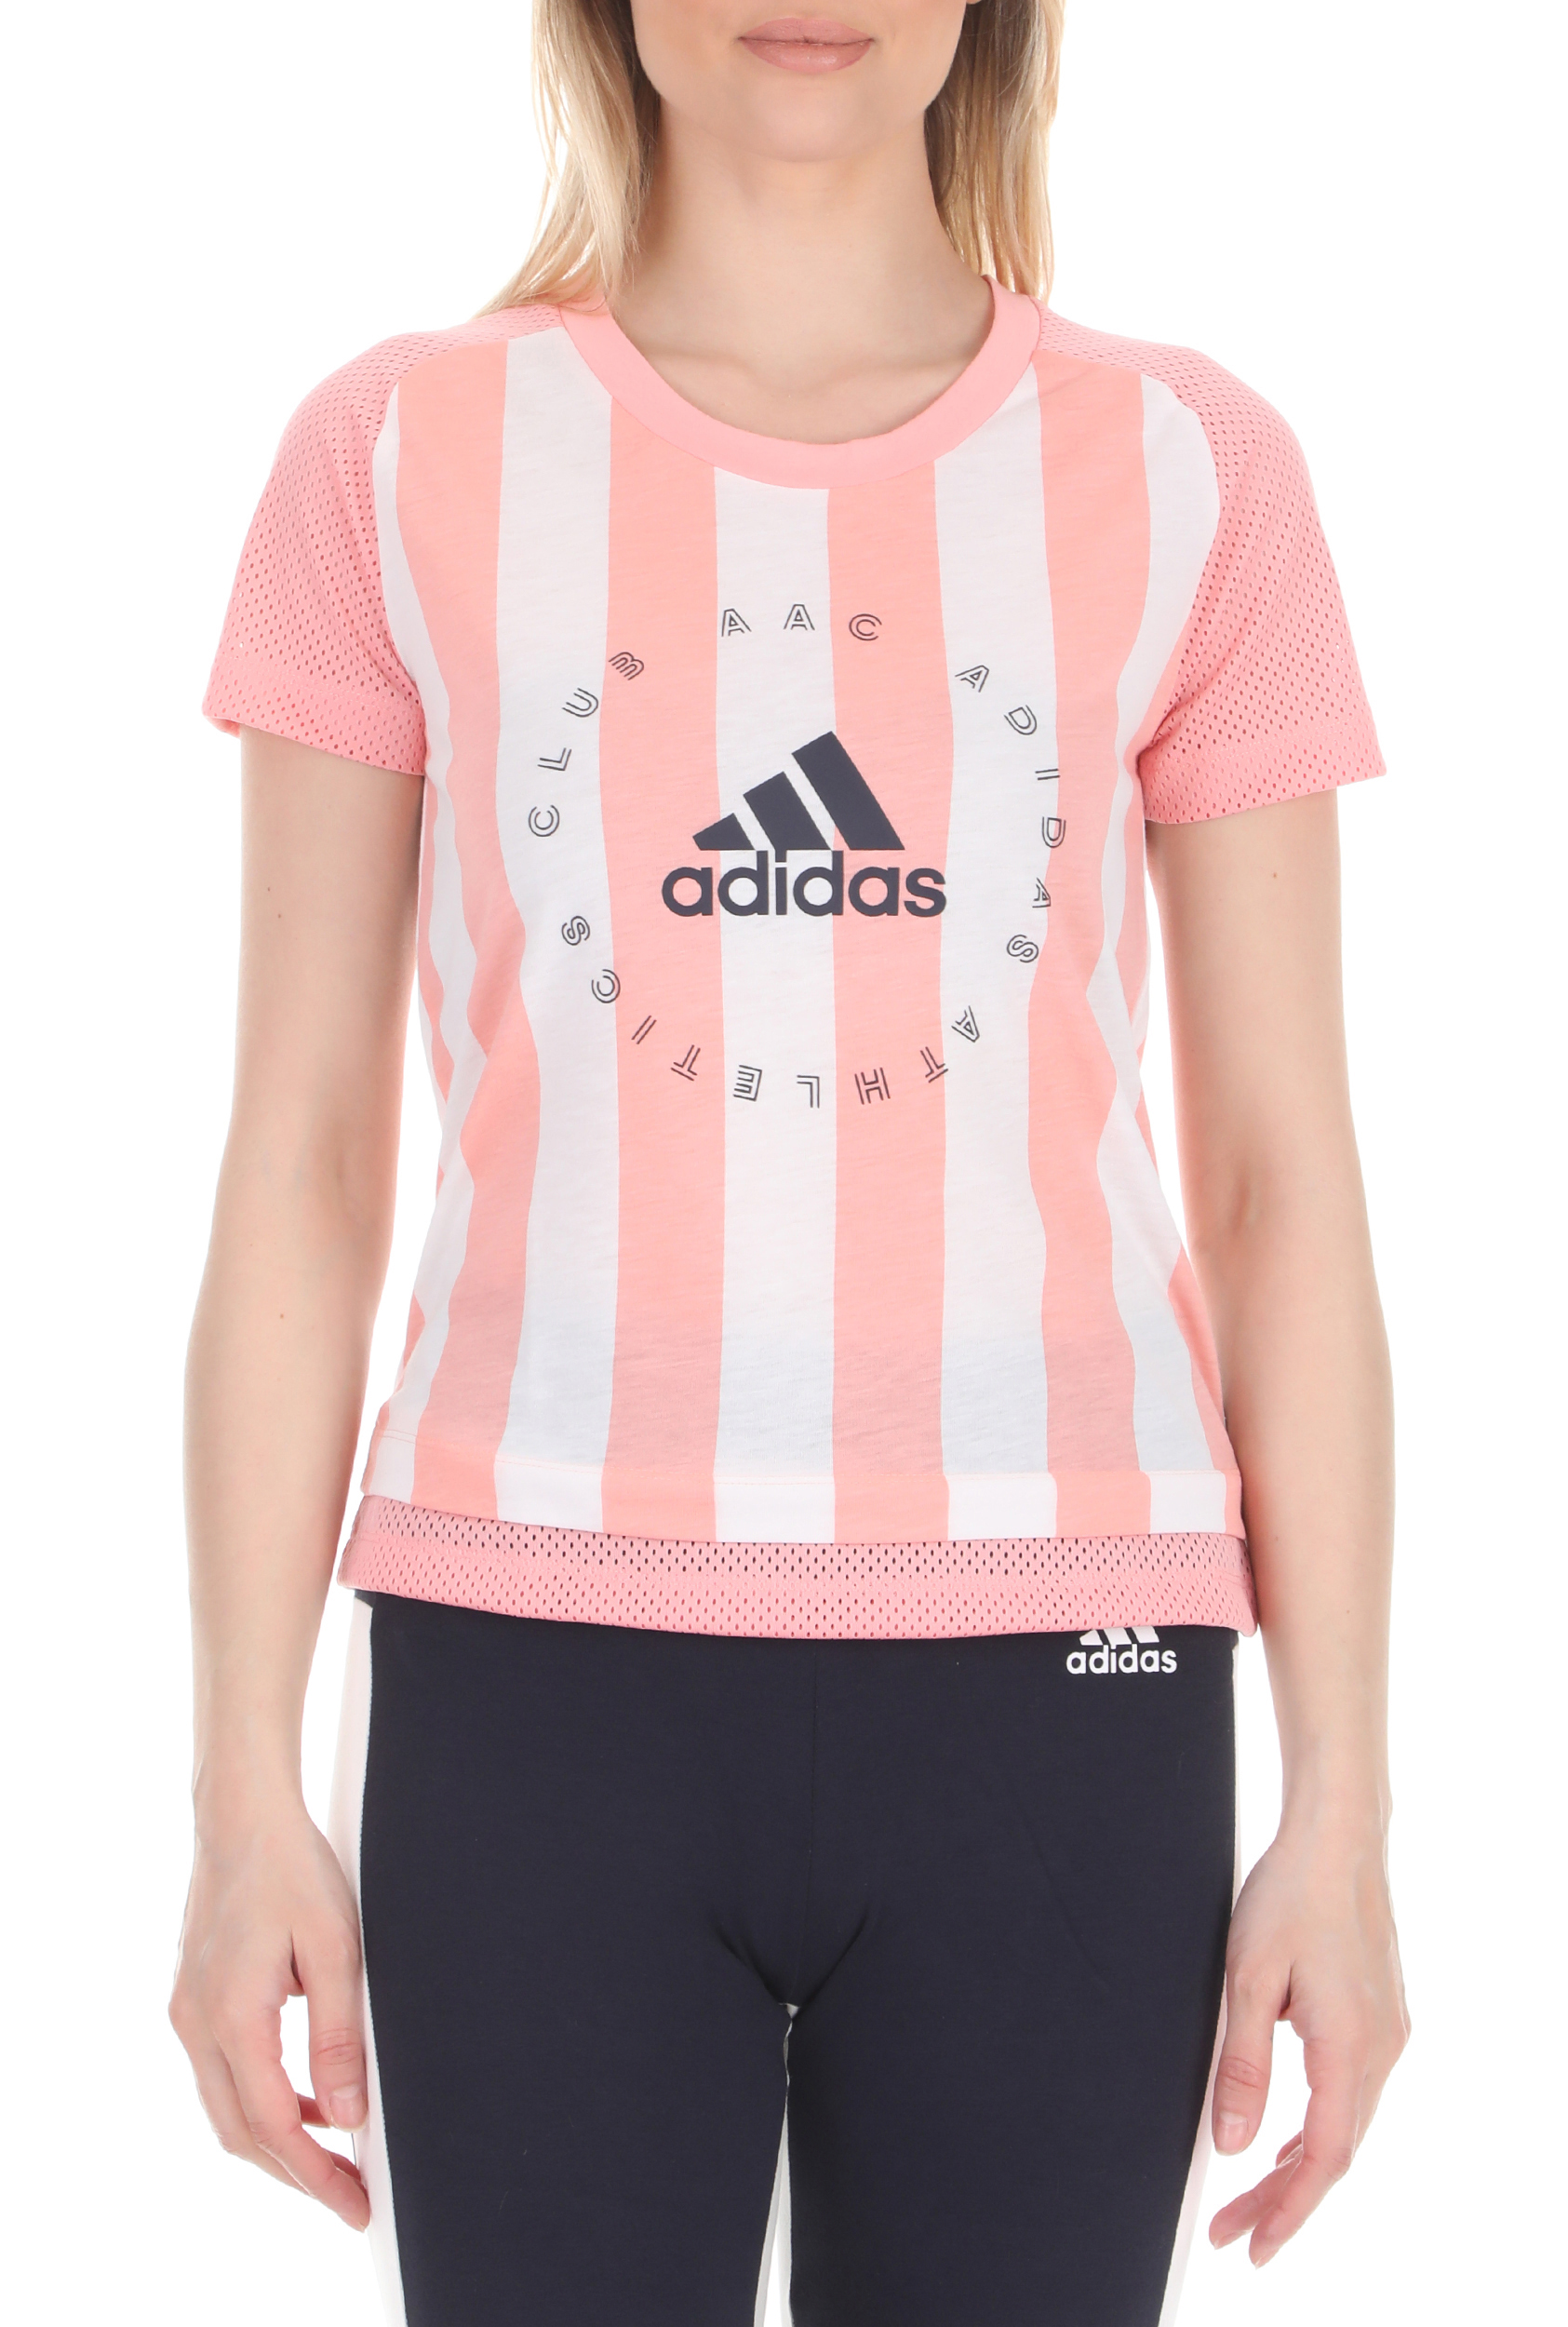 Γυναικεία/Ρούχα/Αθλητικά/T-shirt-Τοπ adidas Performance - Γυναικείο t-shirt adidas Performance W AAC Tee ροζ λευκή